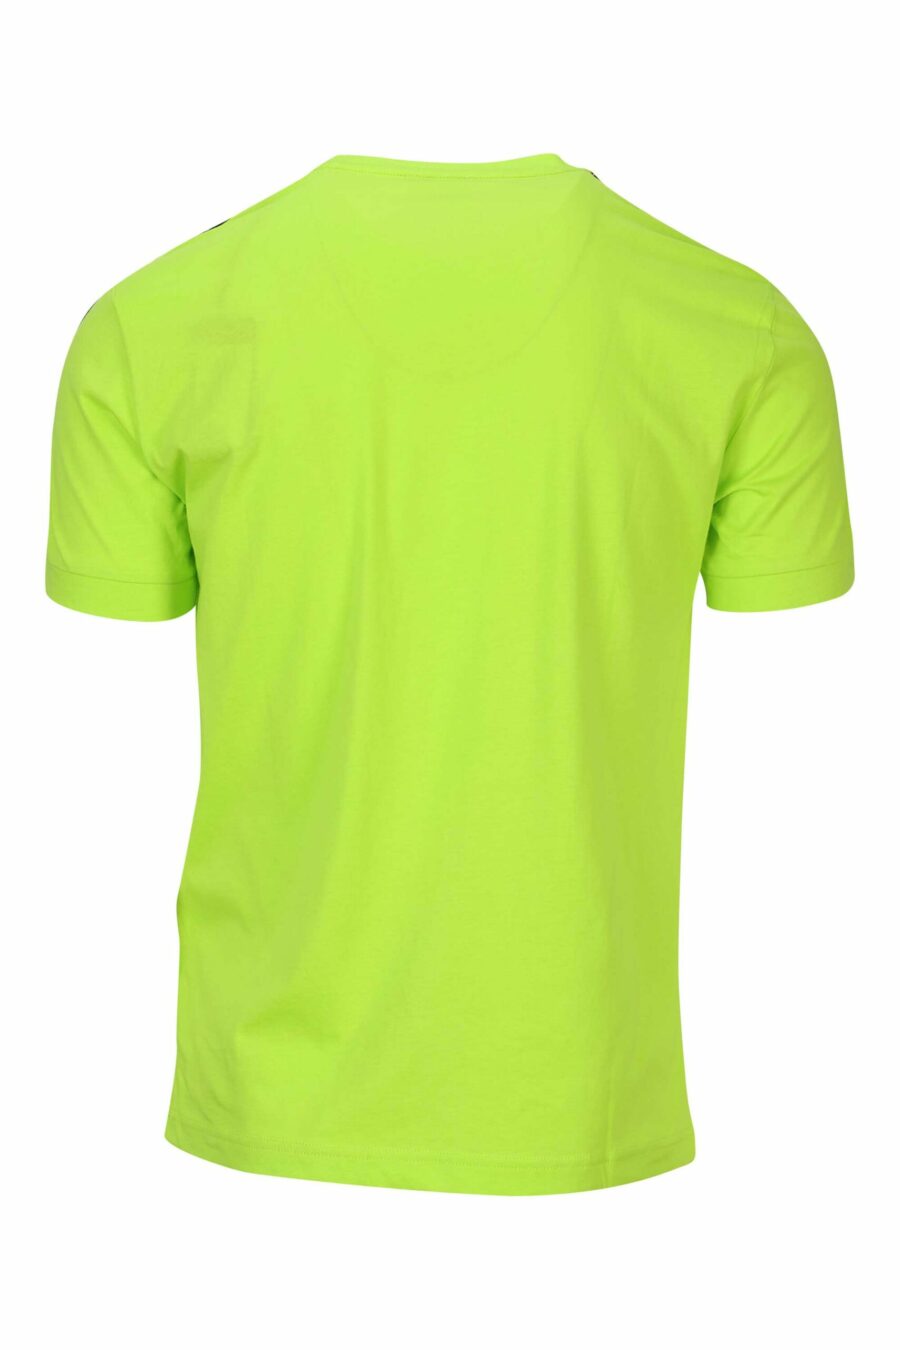 T-shirt verde-limão com mini-logotipo preto "lux identity" - 8058947490943 1 à escala